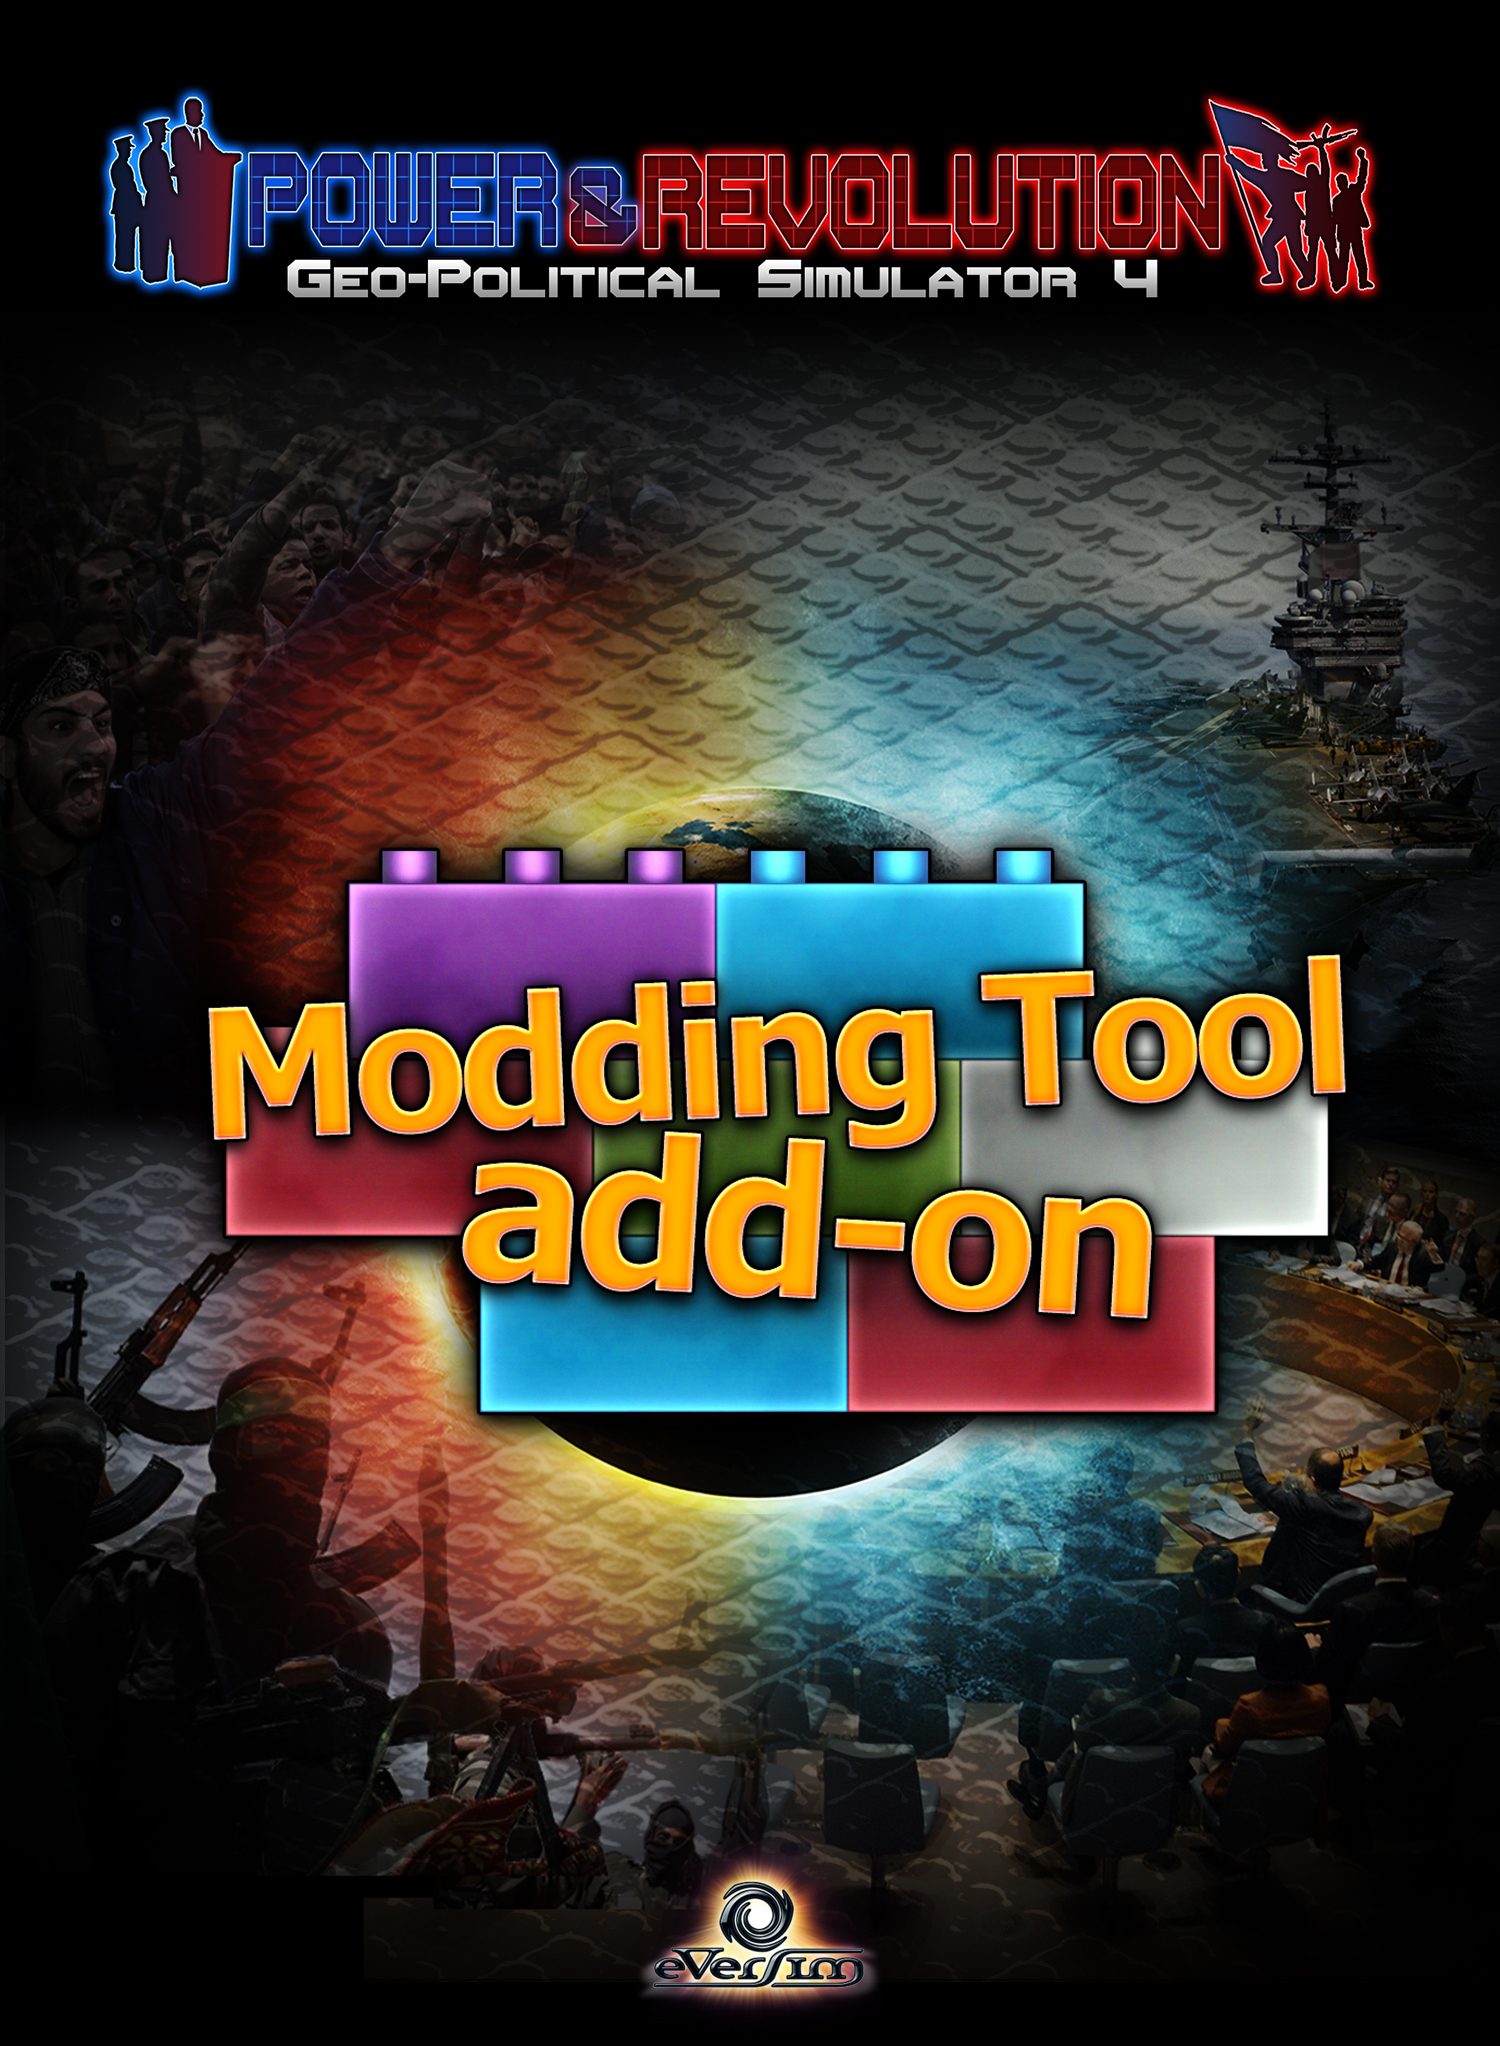 Disponibile l'add-on "Modding Tool" di Power & Revolution, premiato per le migliori mod realizzate 1